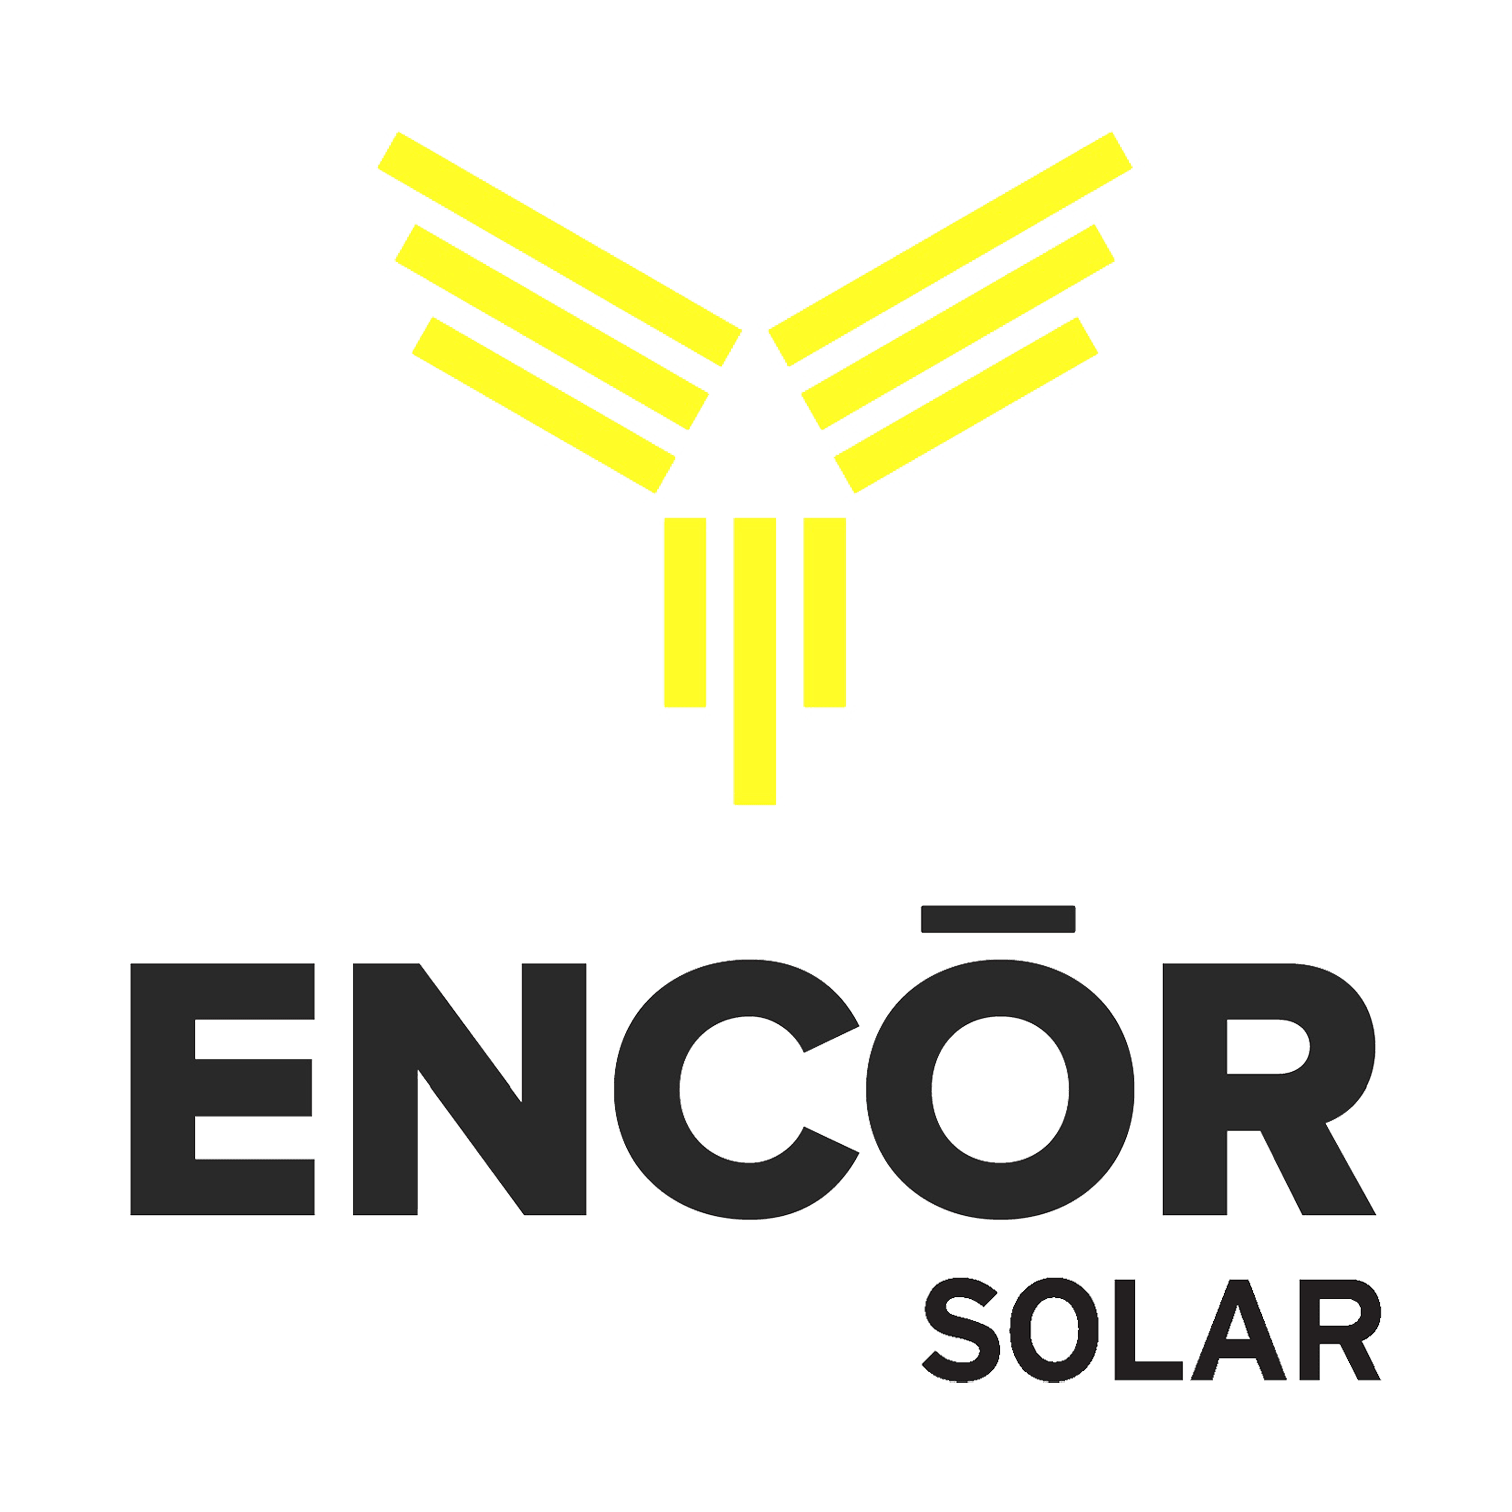 Encor Solar é uma boa empresa?